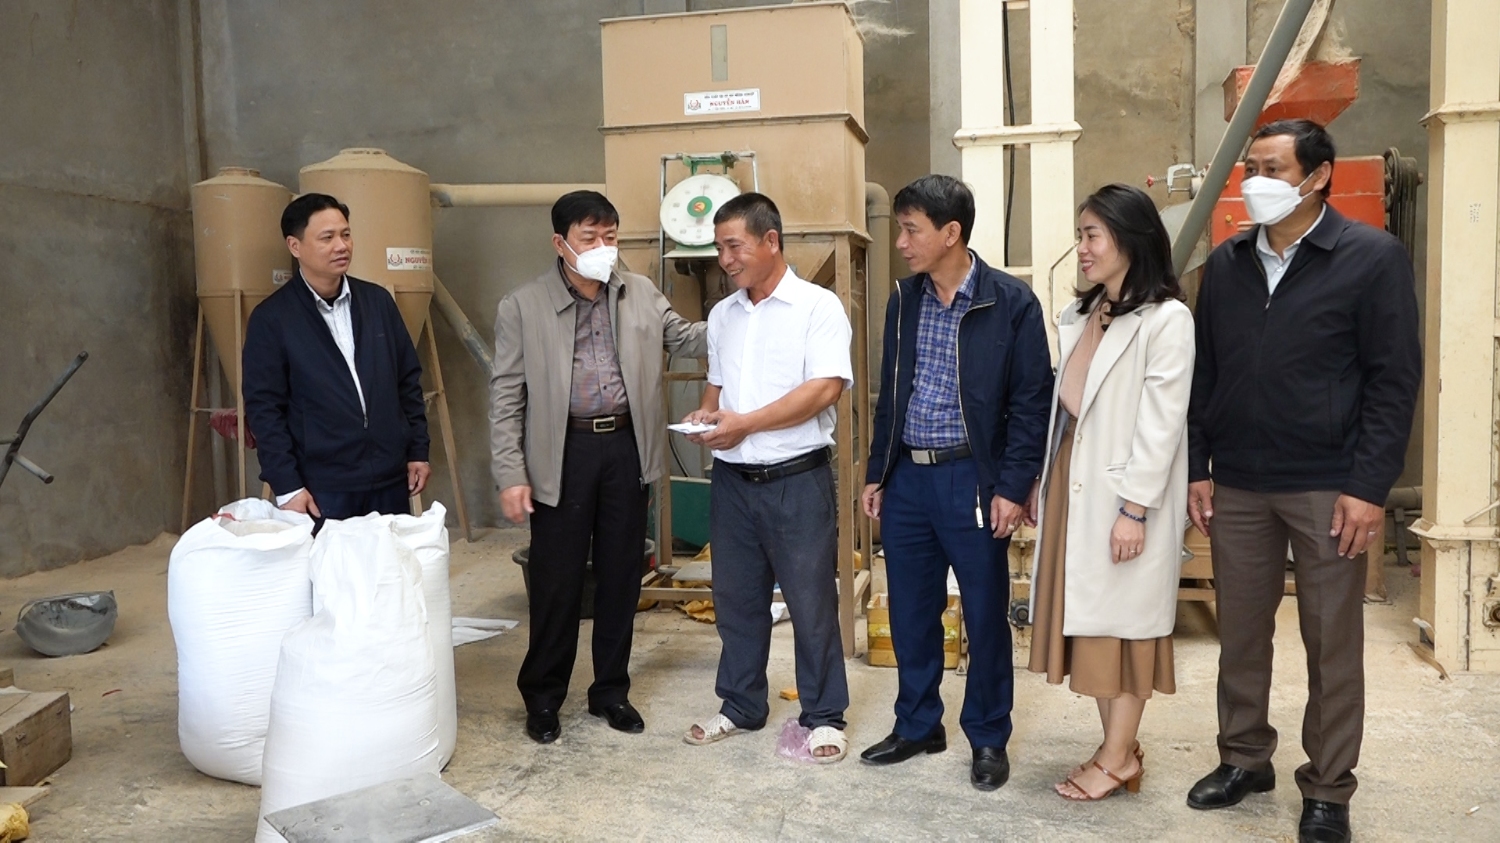 Đồng chí Chủ tịch UBND thị xã và đoàn công tác thăm tặng quà cho mô hình sản xuất gạo sạch của anh Nguyễn Thanh Hương ở xã Quảng Hòa